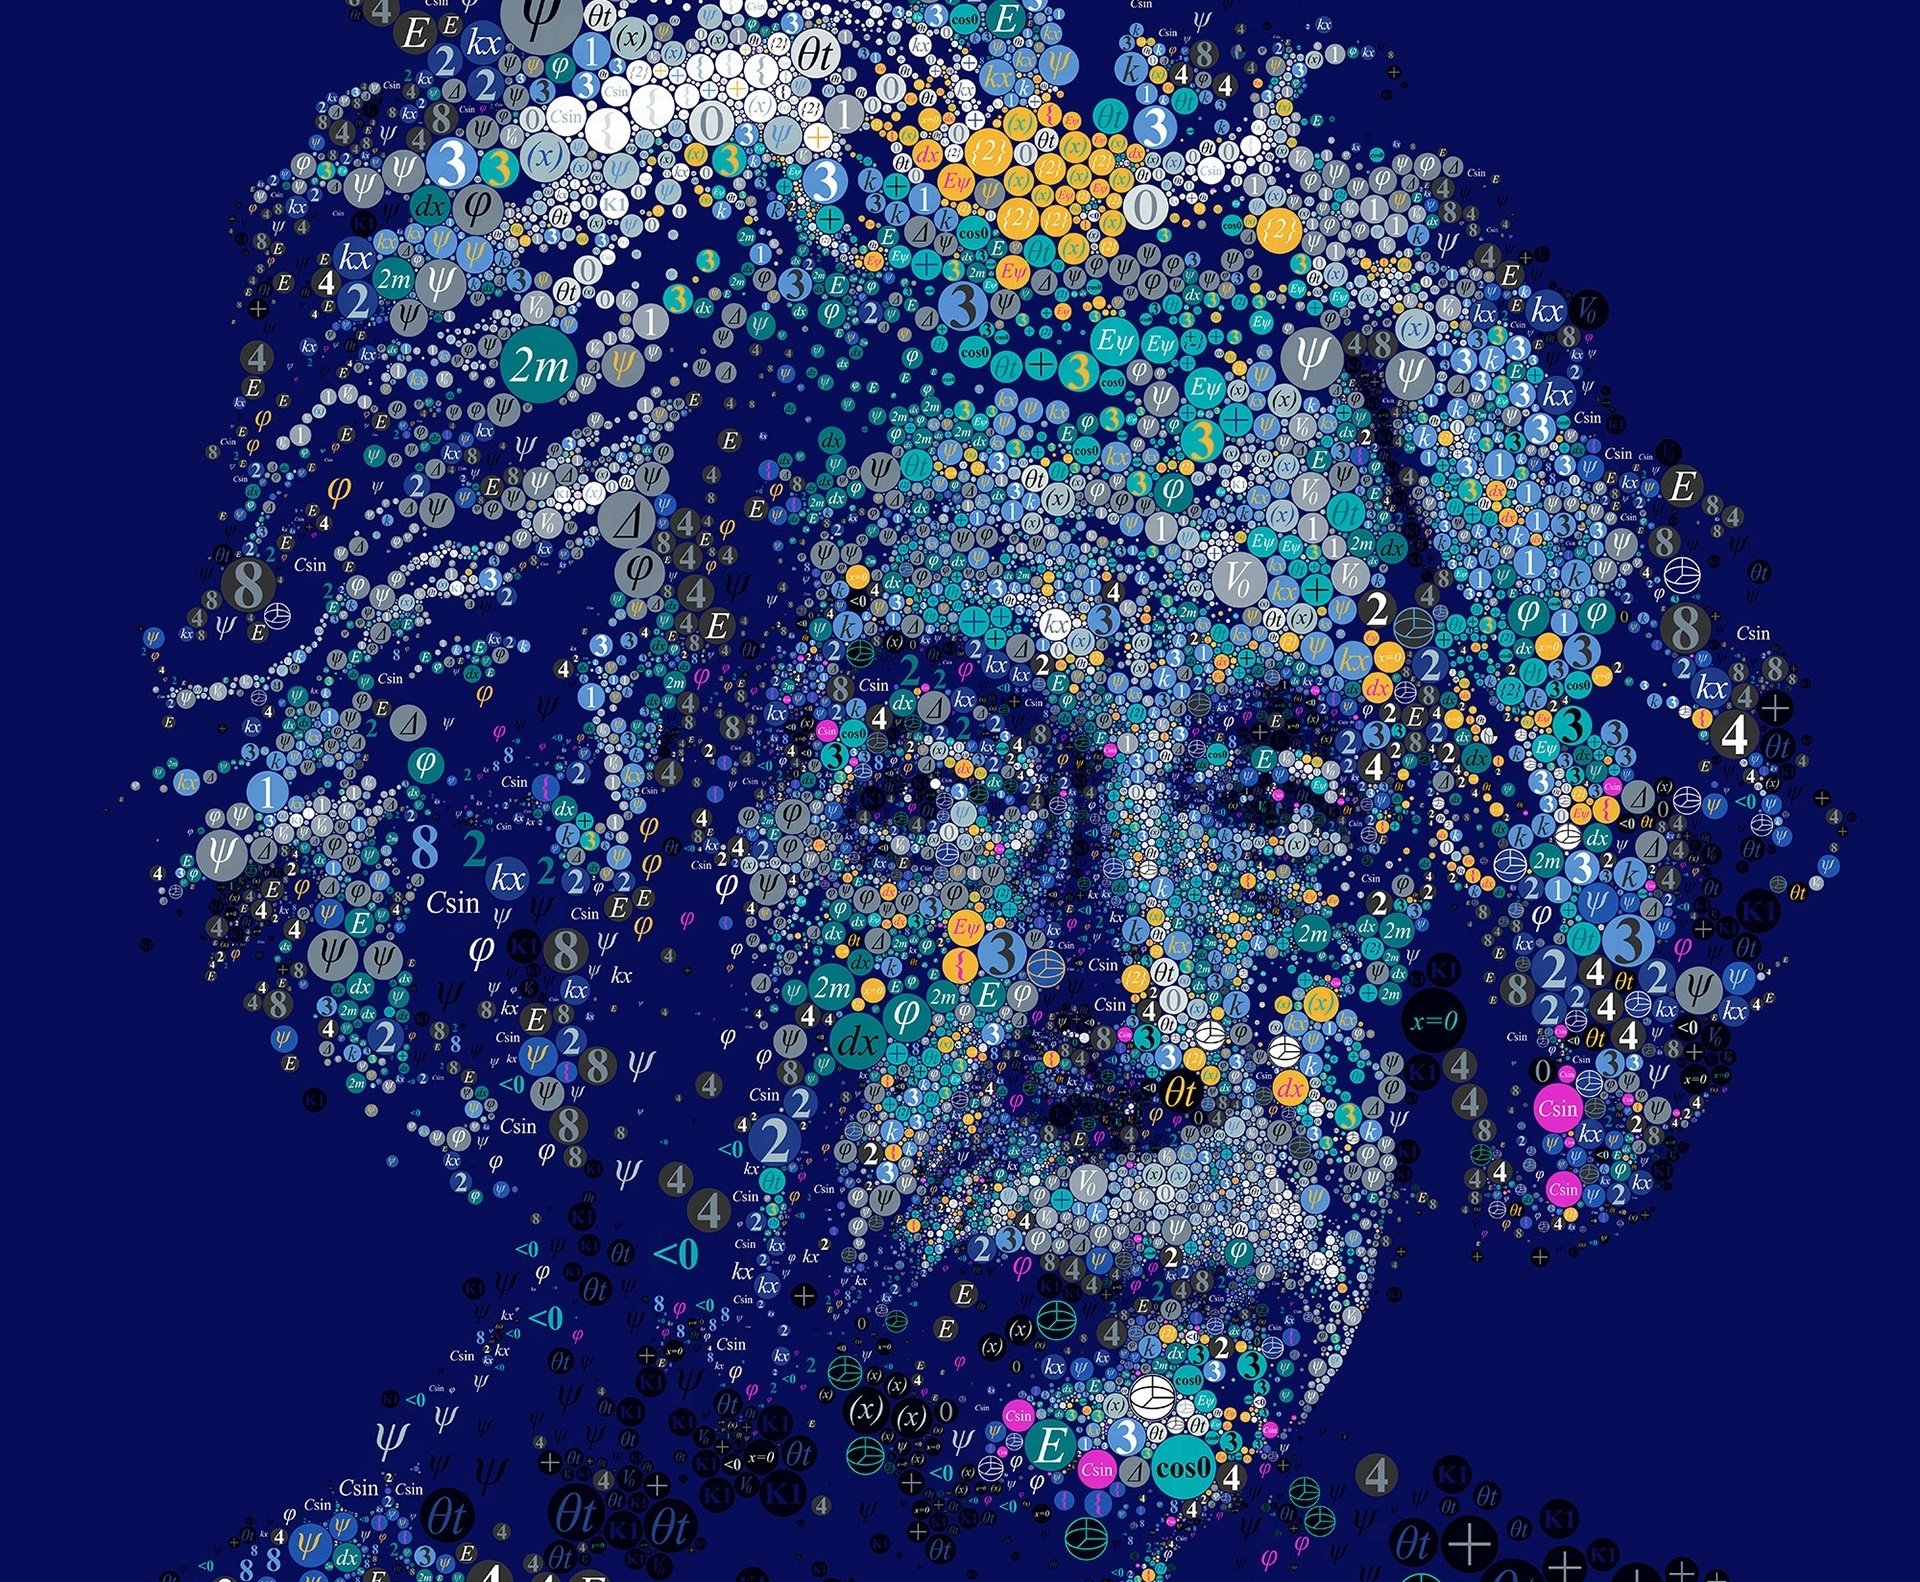 Albert Einstein Pictures [HD] | Download Free Images on Unsplash